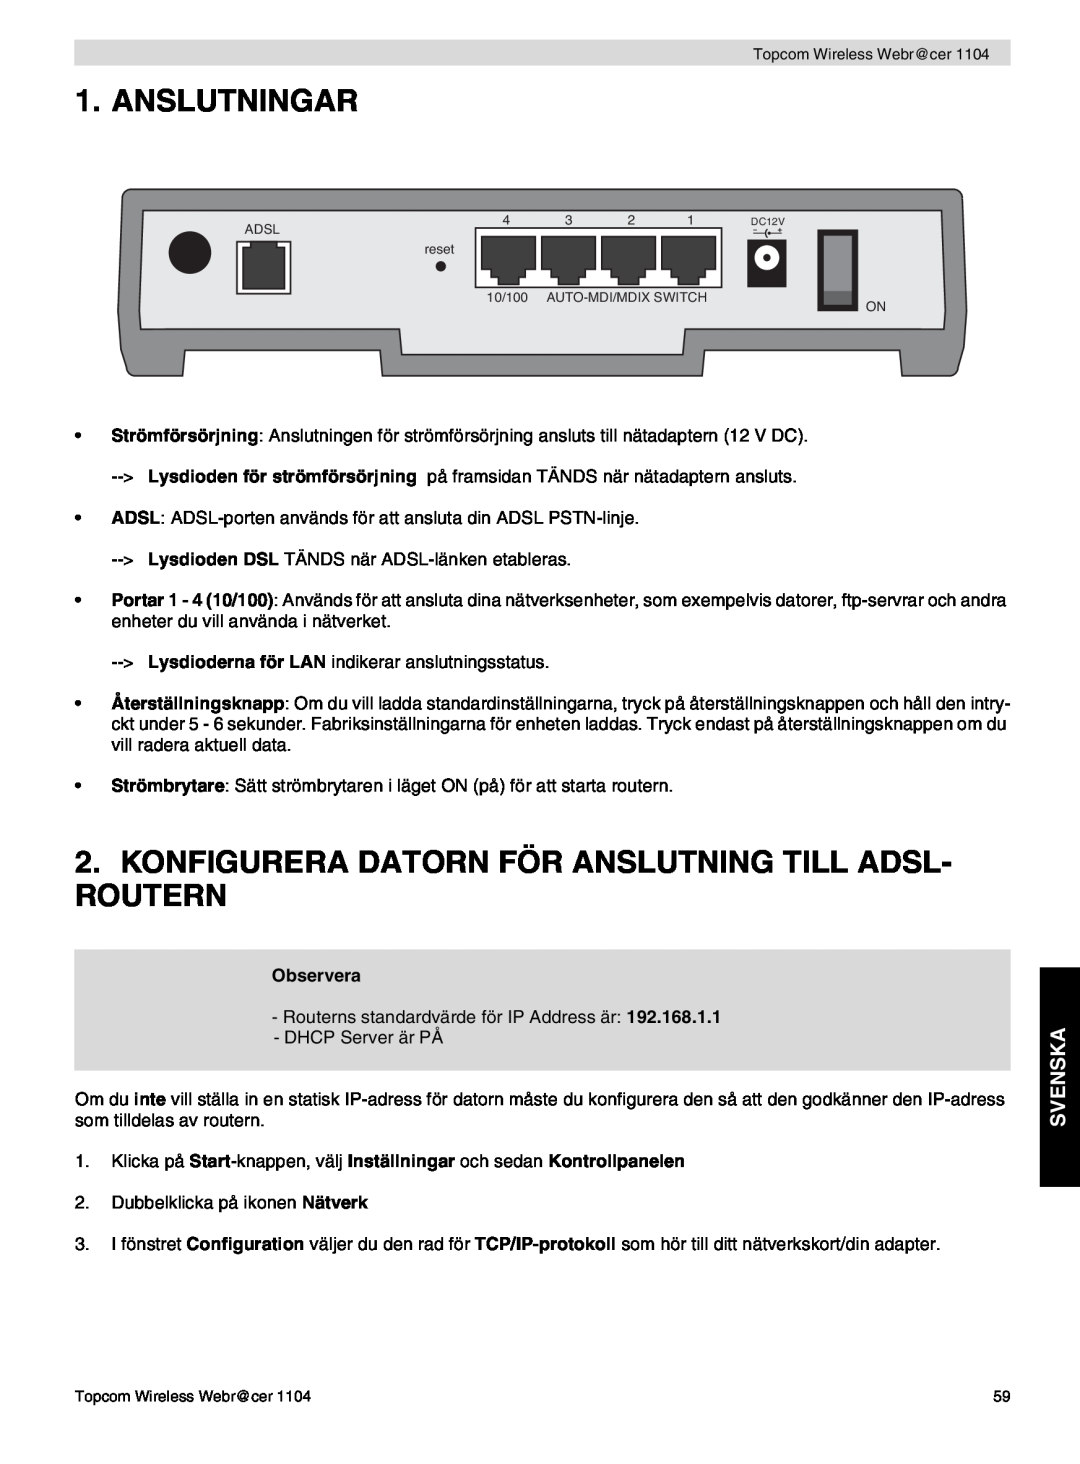 Topcom 1104 manual do utilizador Anslutningar, Konfigurera Datorn För Anslutning Till Adsl- Routern, Svenska 